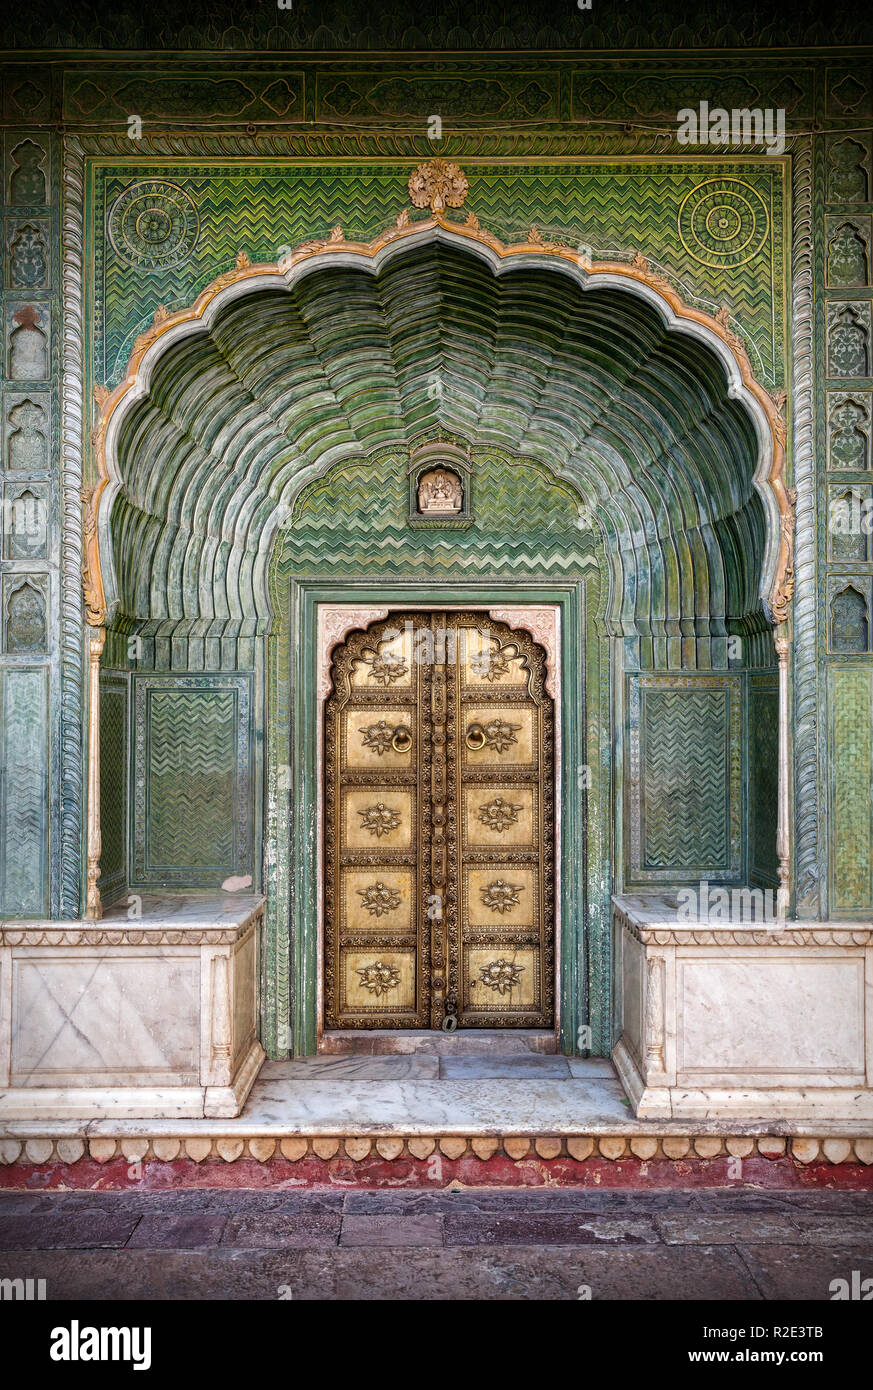 Porte verte et porte d'or dans la région de palais de la ville de Jaipur, Rajasthan, Inde Banque D'Images